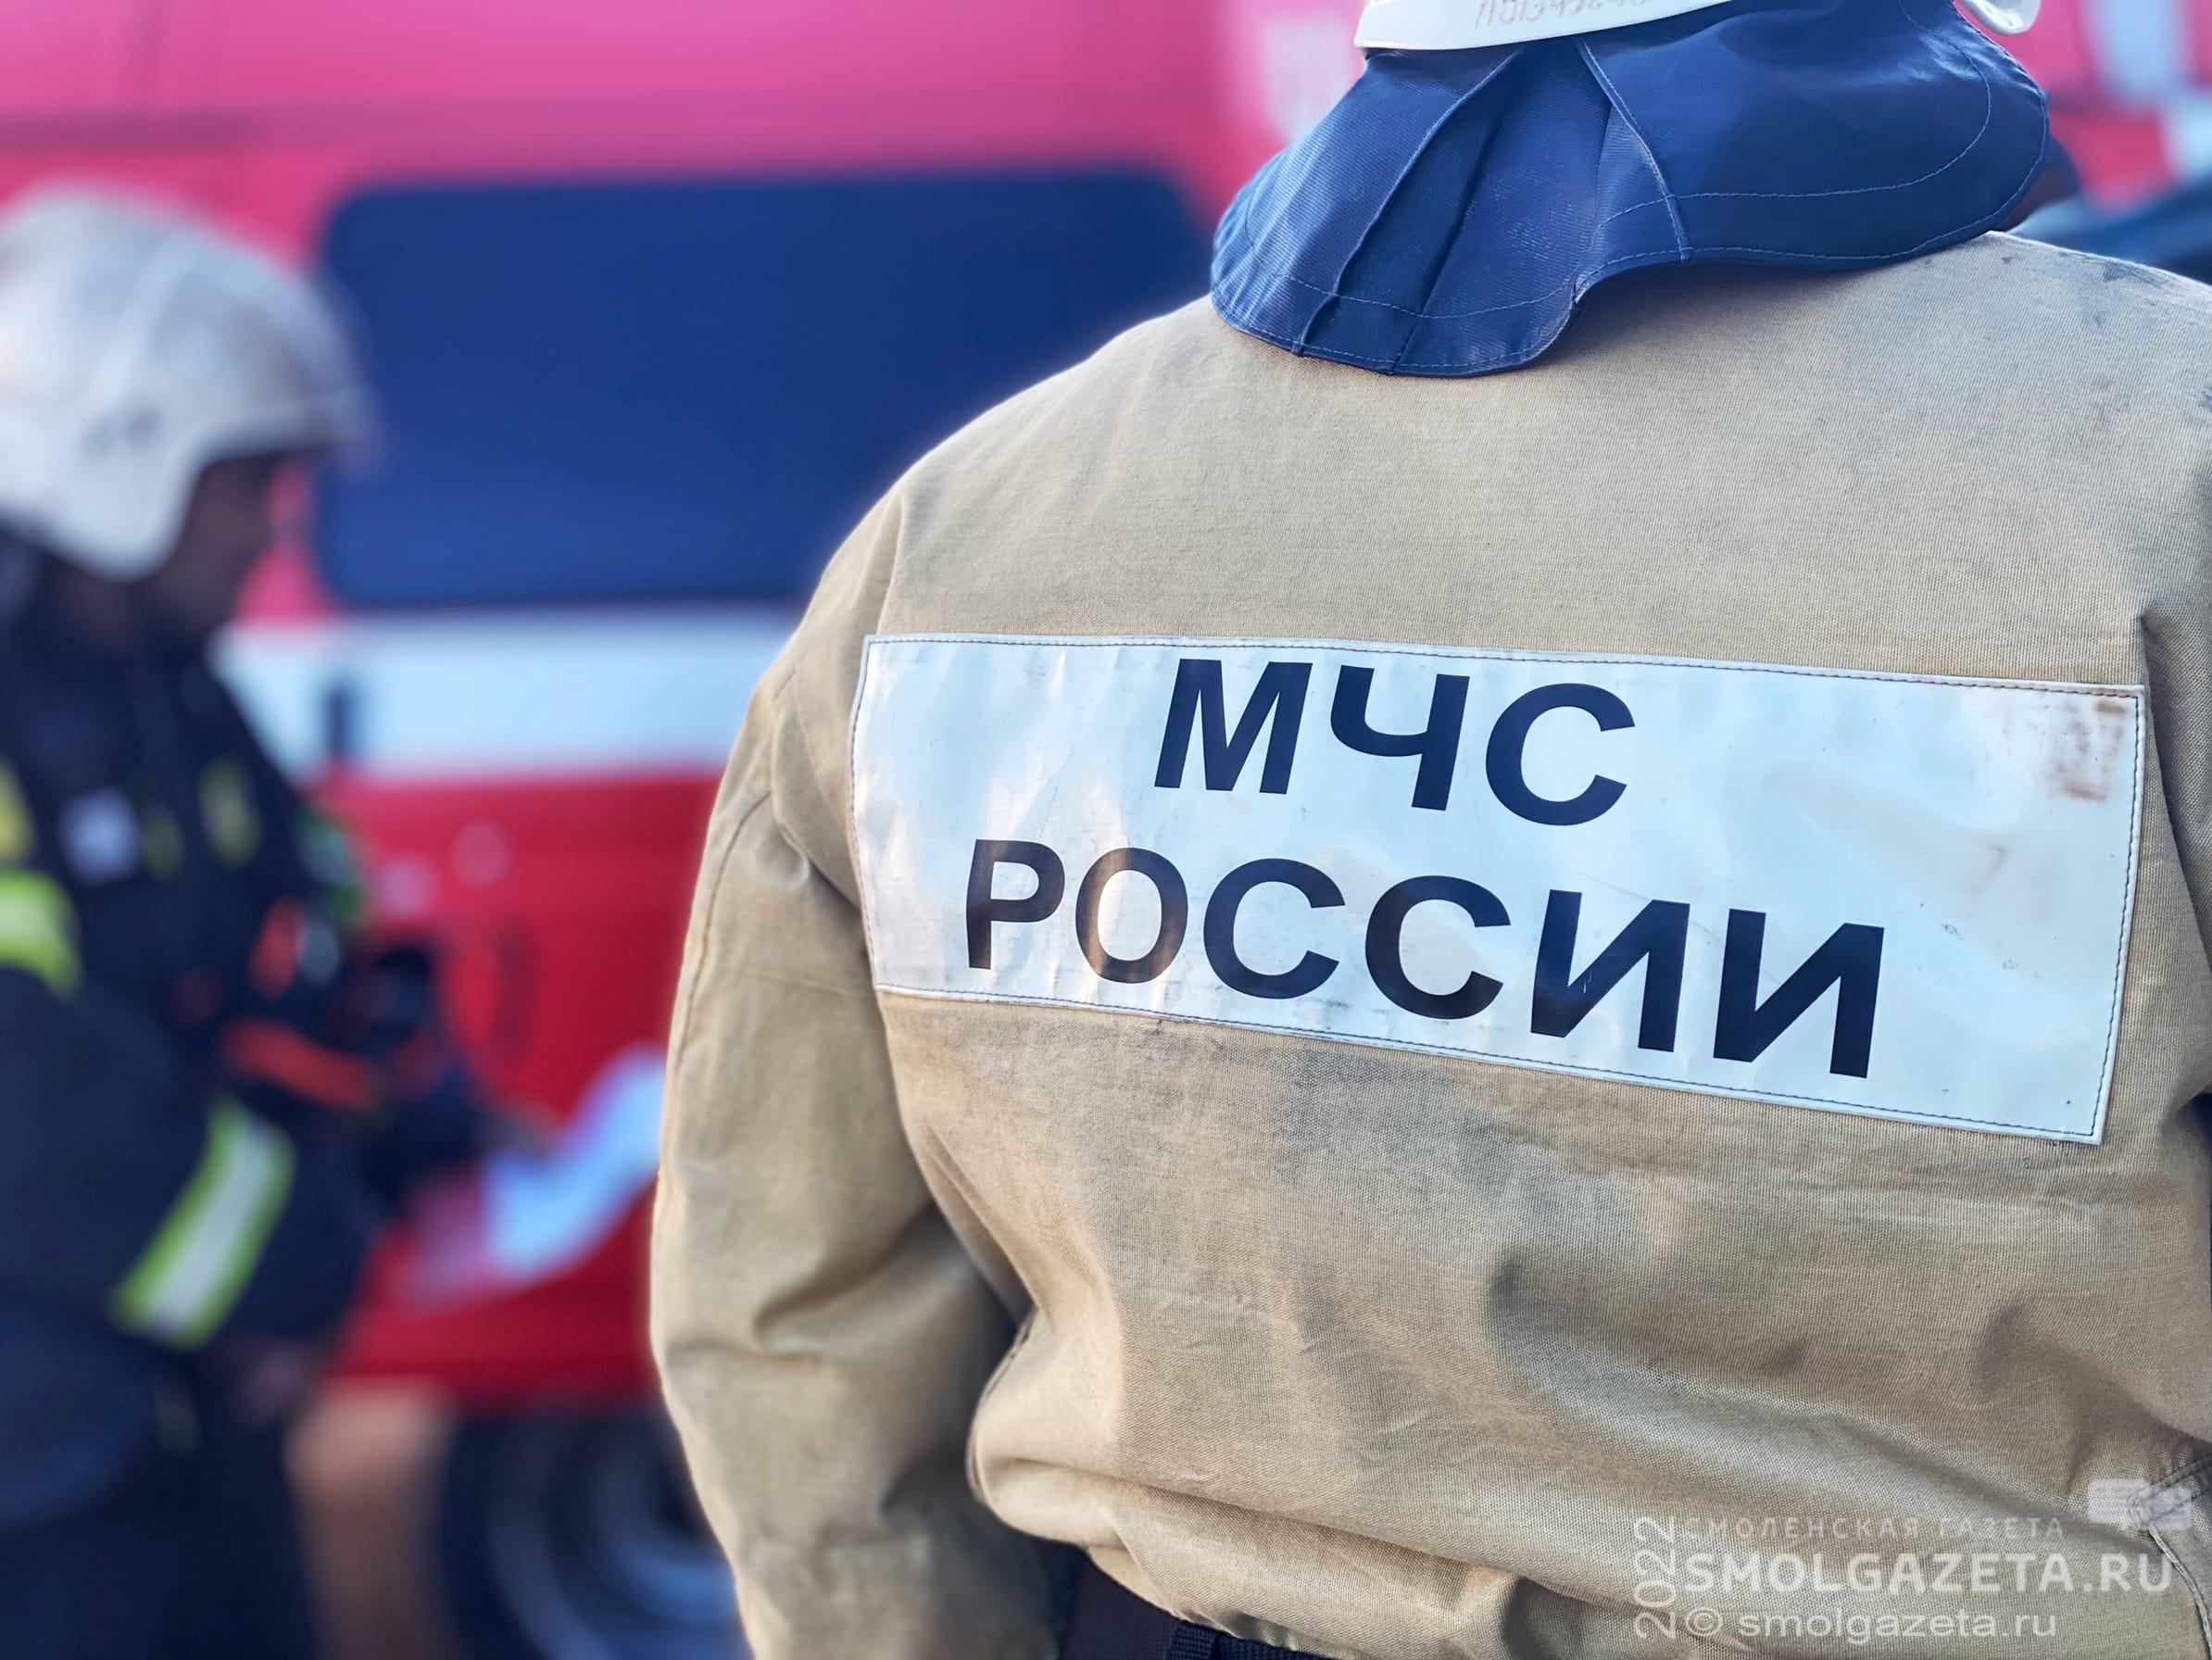 Пожарные спасли мужчину из горящей квартиры в Смоленске